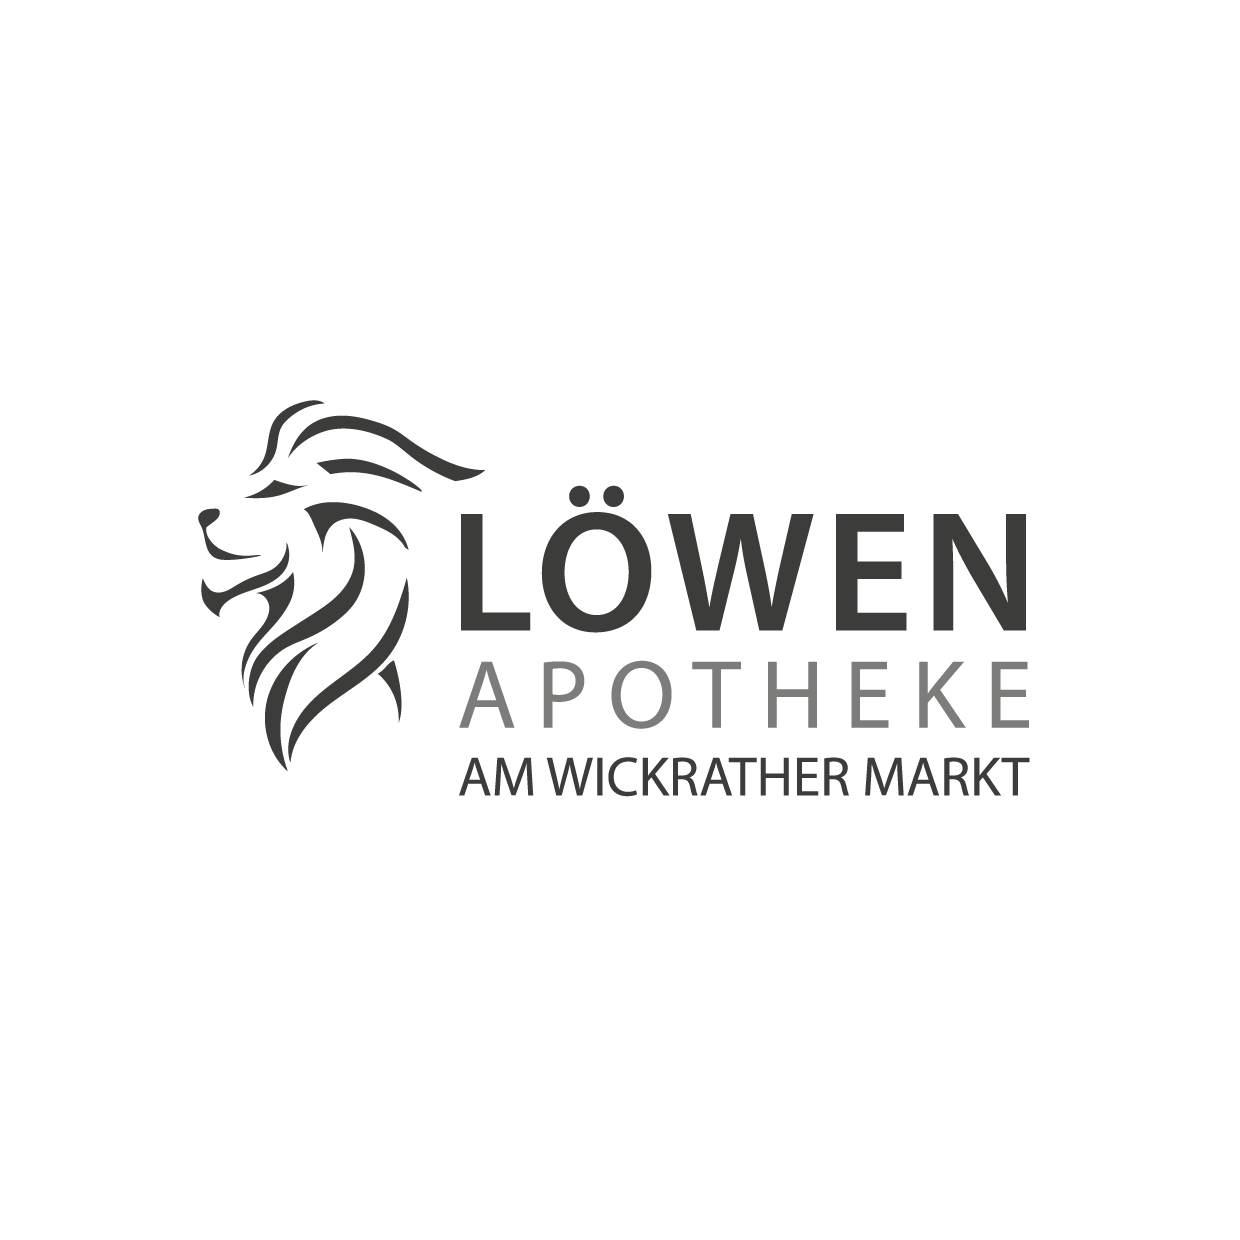 Löwen-Apotheke Wickrath am Markt in Mönchengladbach - Logo